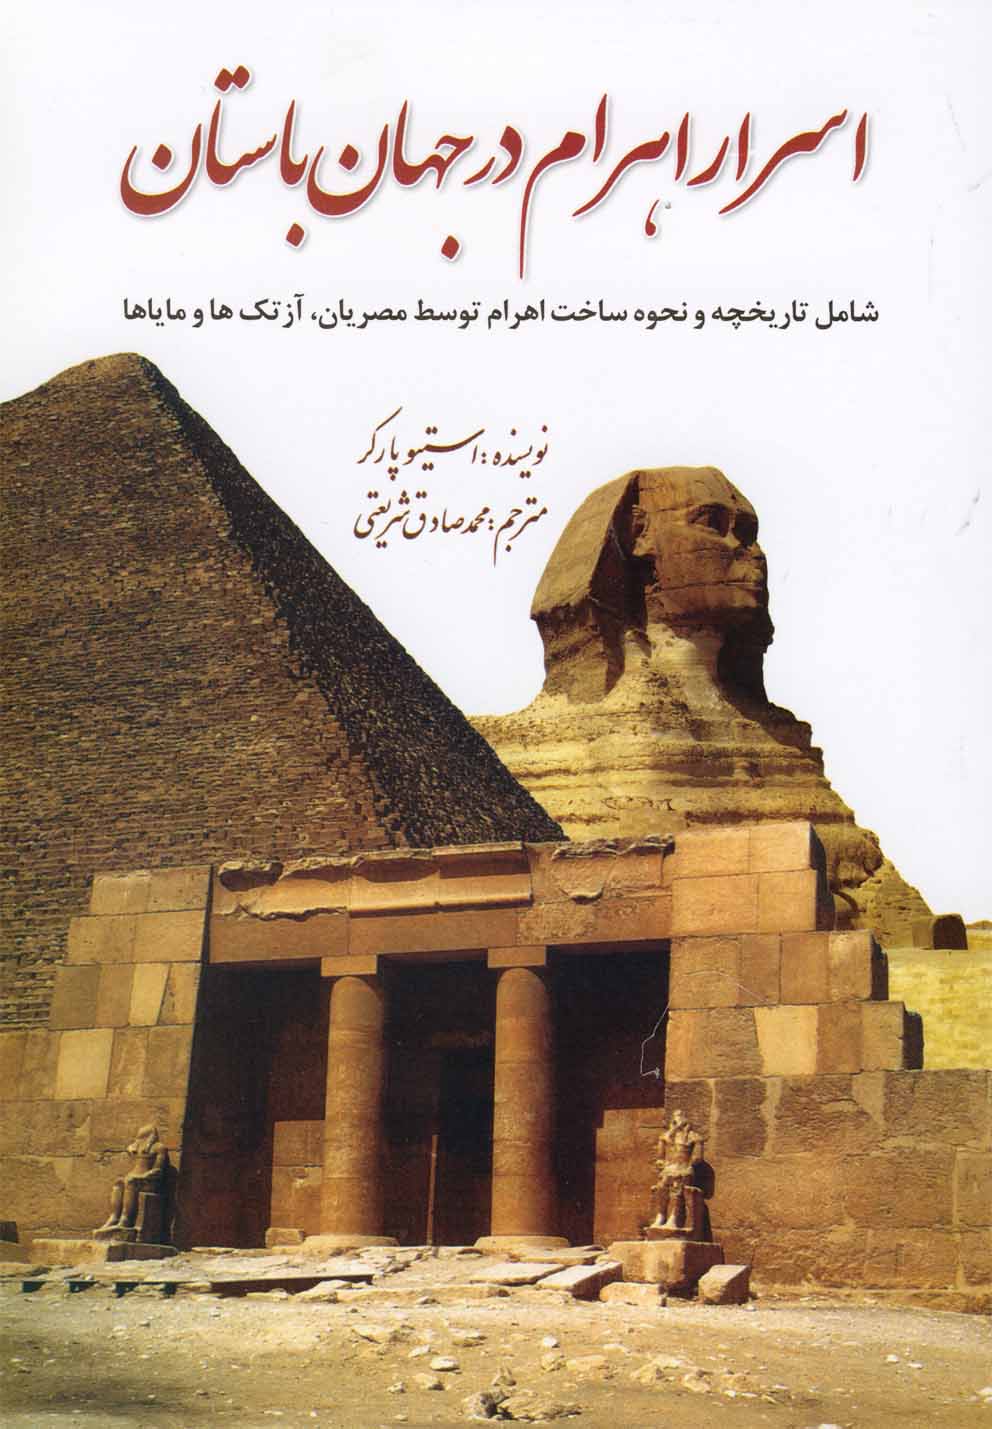 اسرار اهرام در جهان باستان: شامل تاريخچه و نحوه ساخت اهرام توسط مصريان، آزتك ها و ماياها